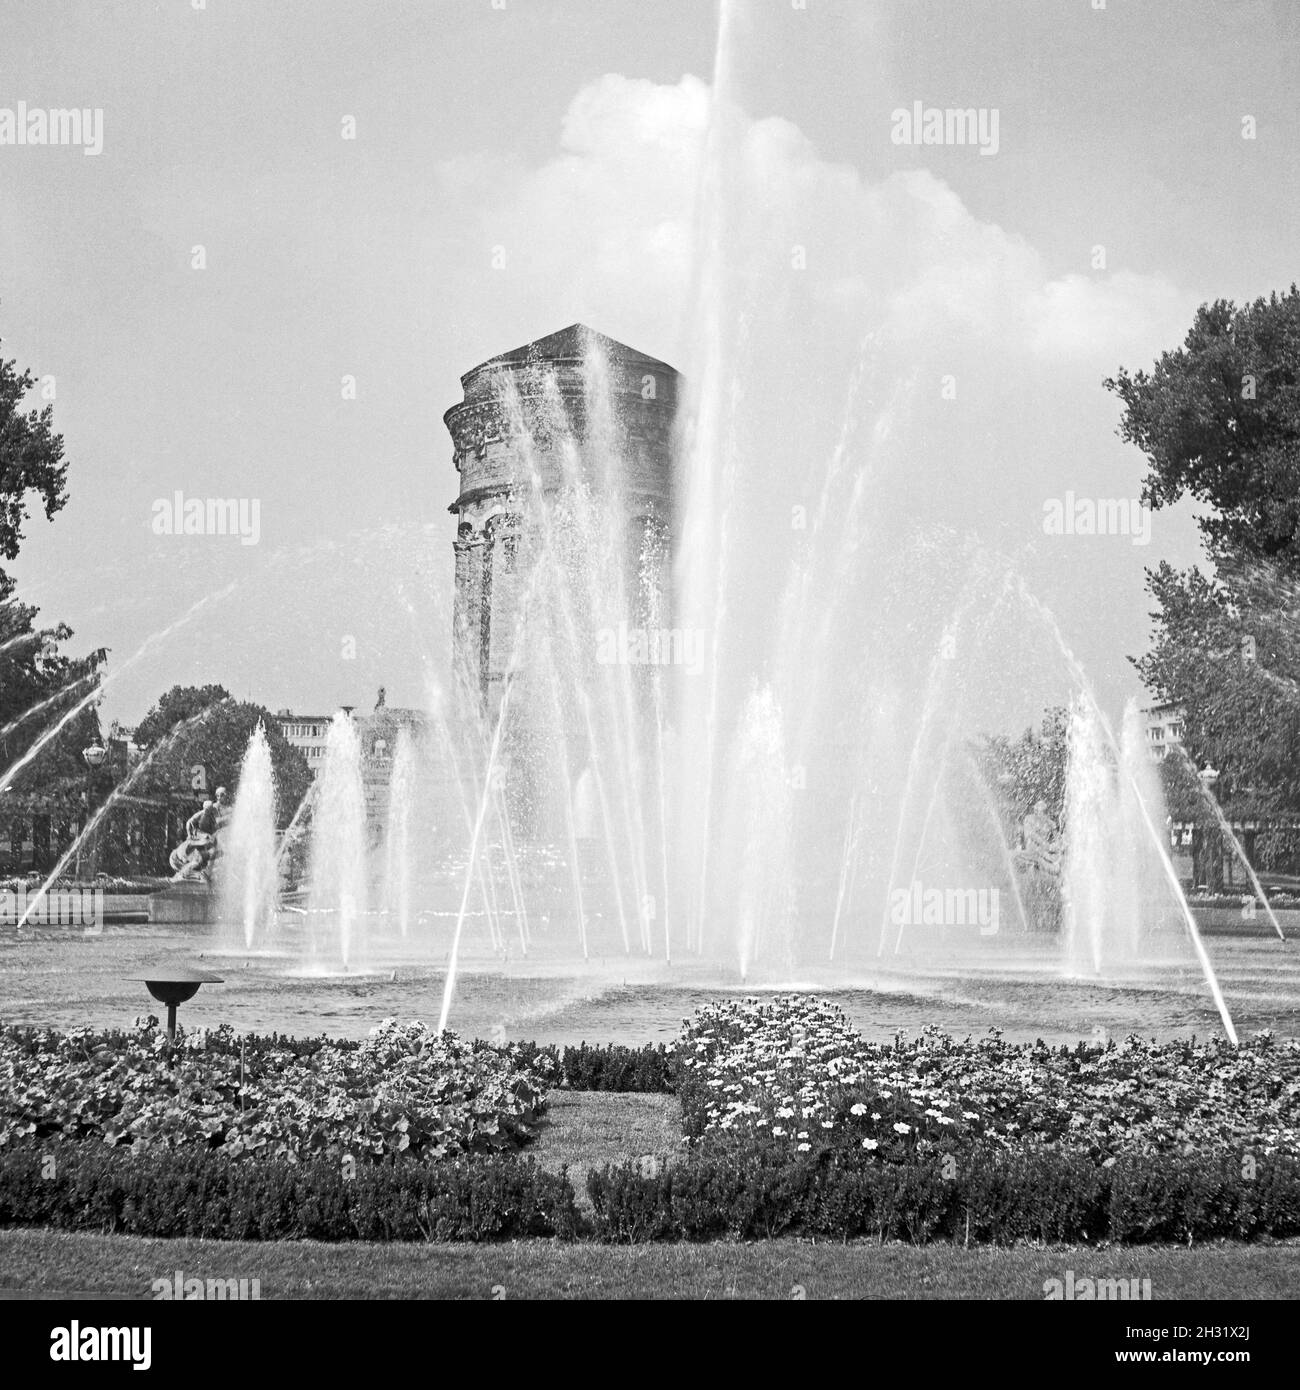 Der Wasserturm a Mannheim, Germania 1957. Torre dell'acqua di Mannheim, Germania 1957. Foto Stock